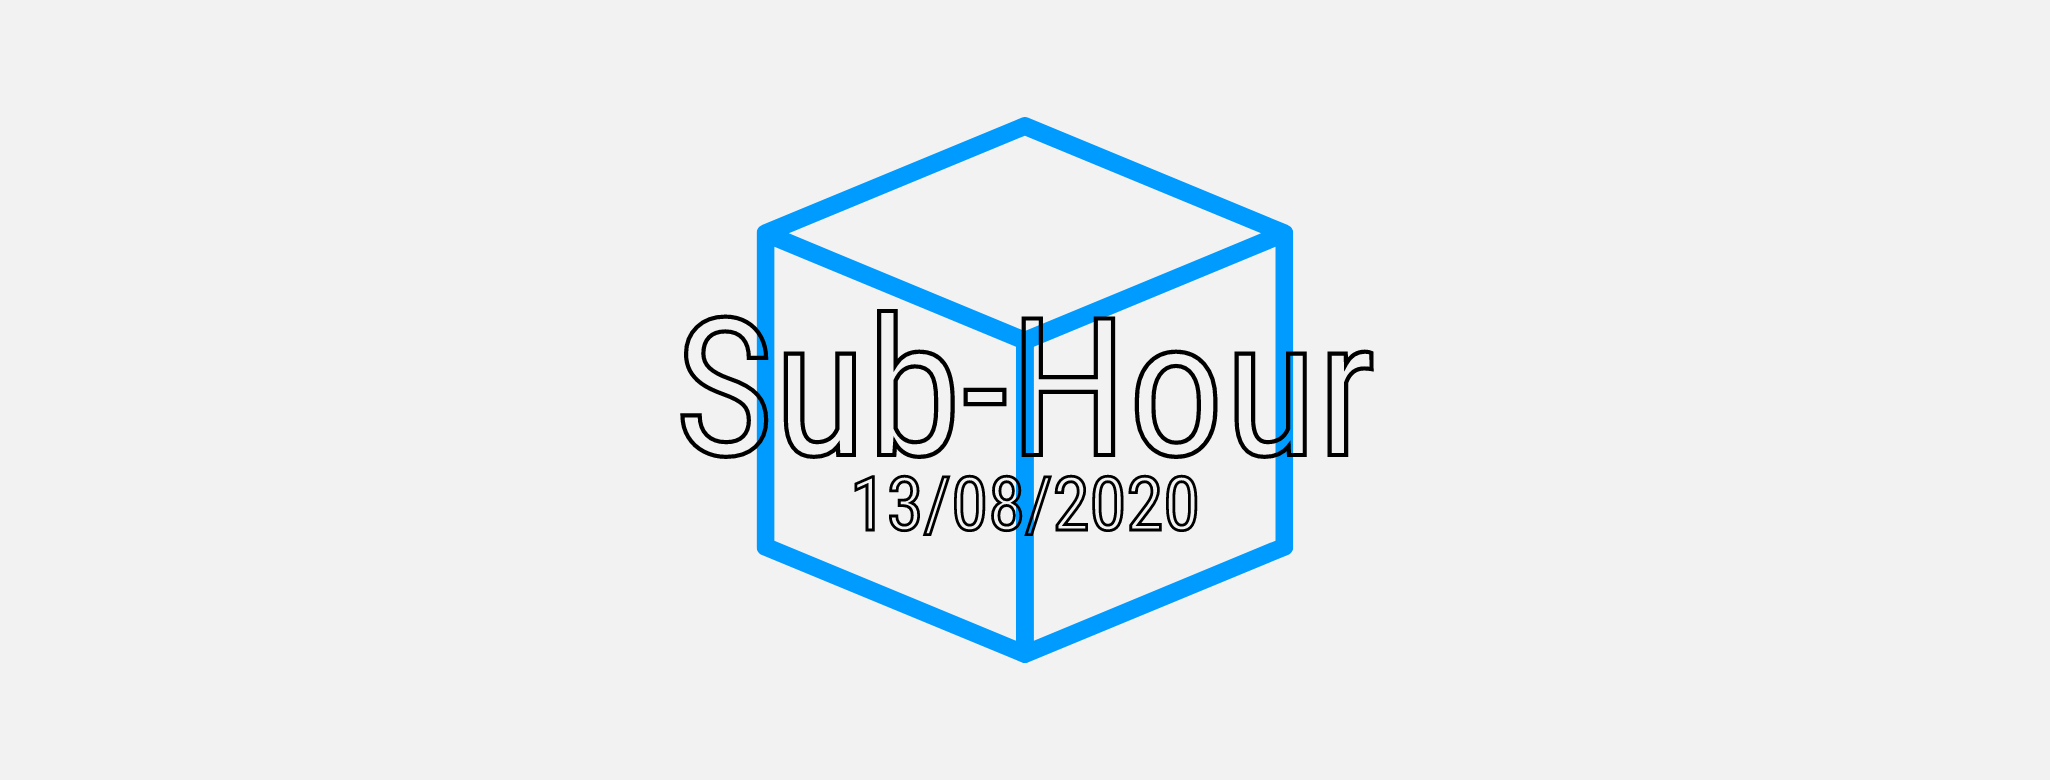 Sub-Hour Demo